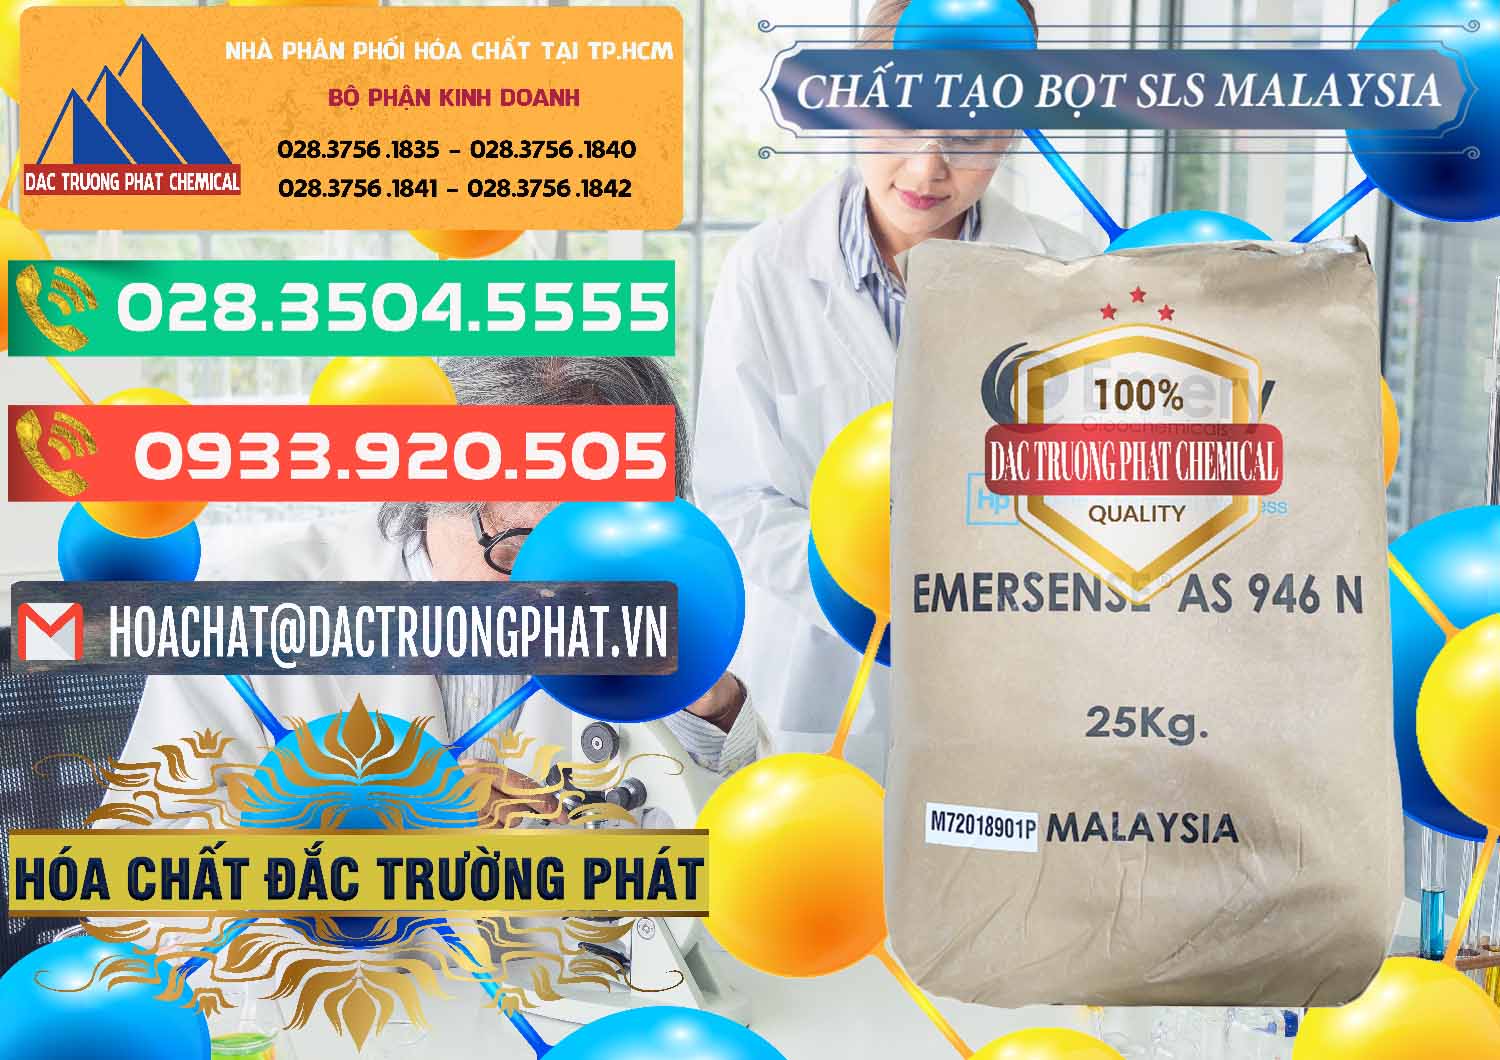 Nơi bán & phân phối Chất Tạo Bọt SLS Emery - Emersense AS 946N Mã Lai Malaysia - 0423 - Đơn vị chuyên cung cấp - nhập khẩu hóa chất tại TP.HCM - congtyhoachat.com.vn